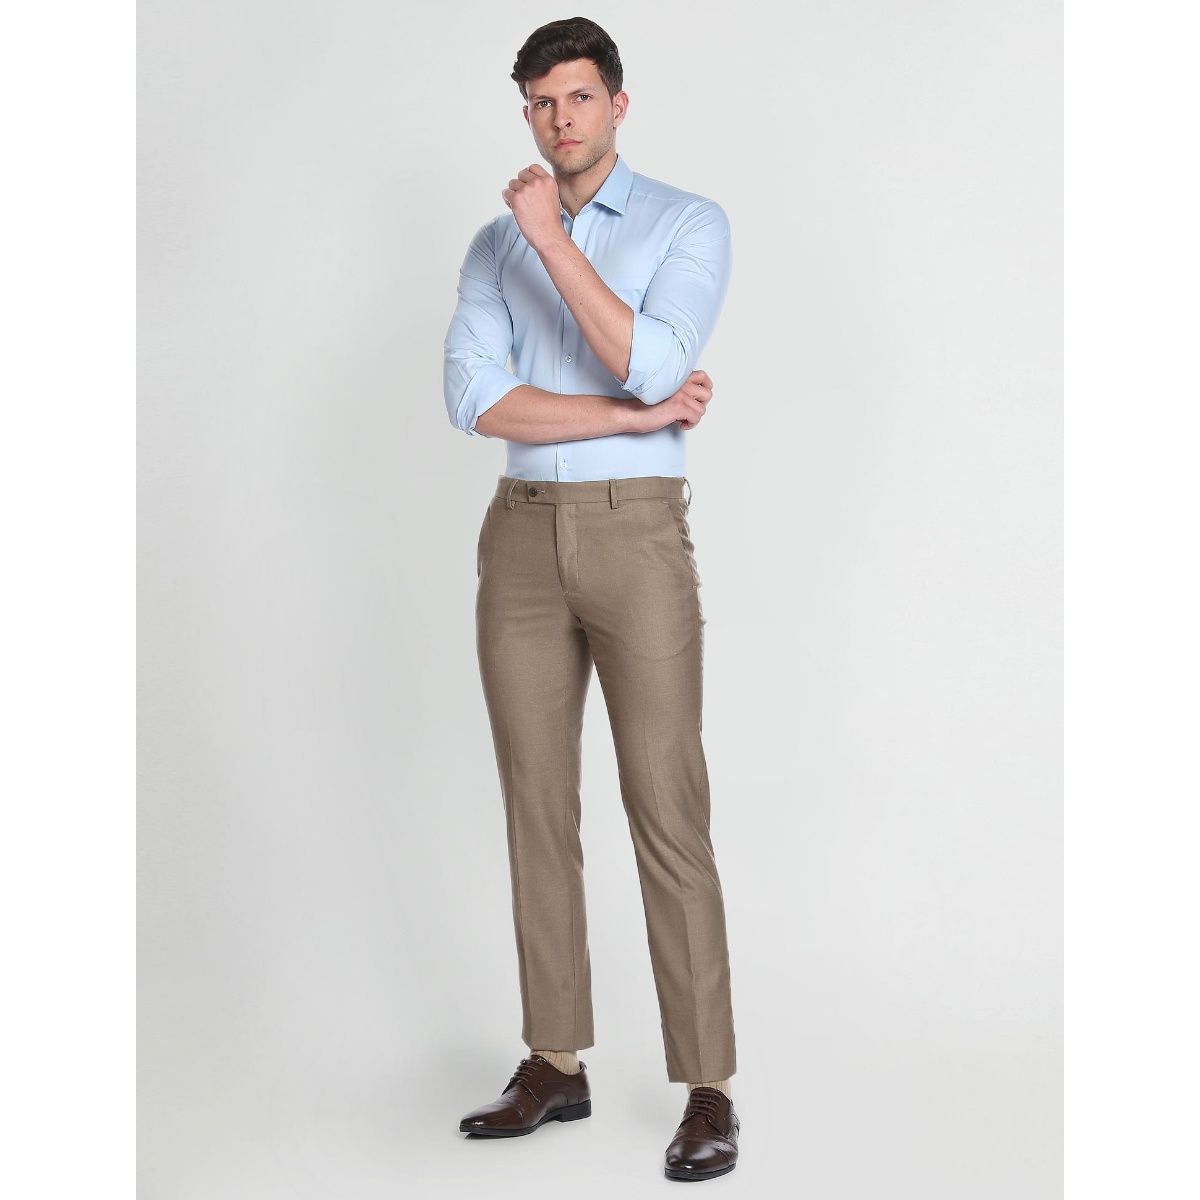 ARROW Slim Fit Men Blue Trousers - Buy ARROW Slim Fit Men Blue Trousers  Online at Best Prices in India | Flipkart.com